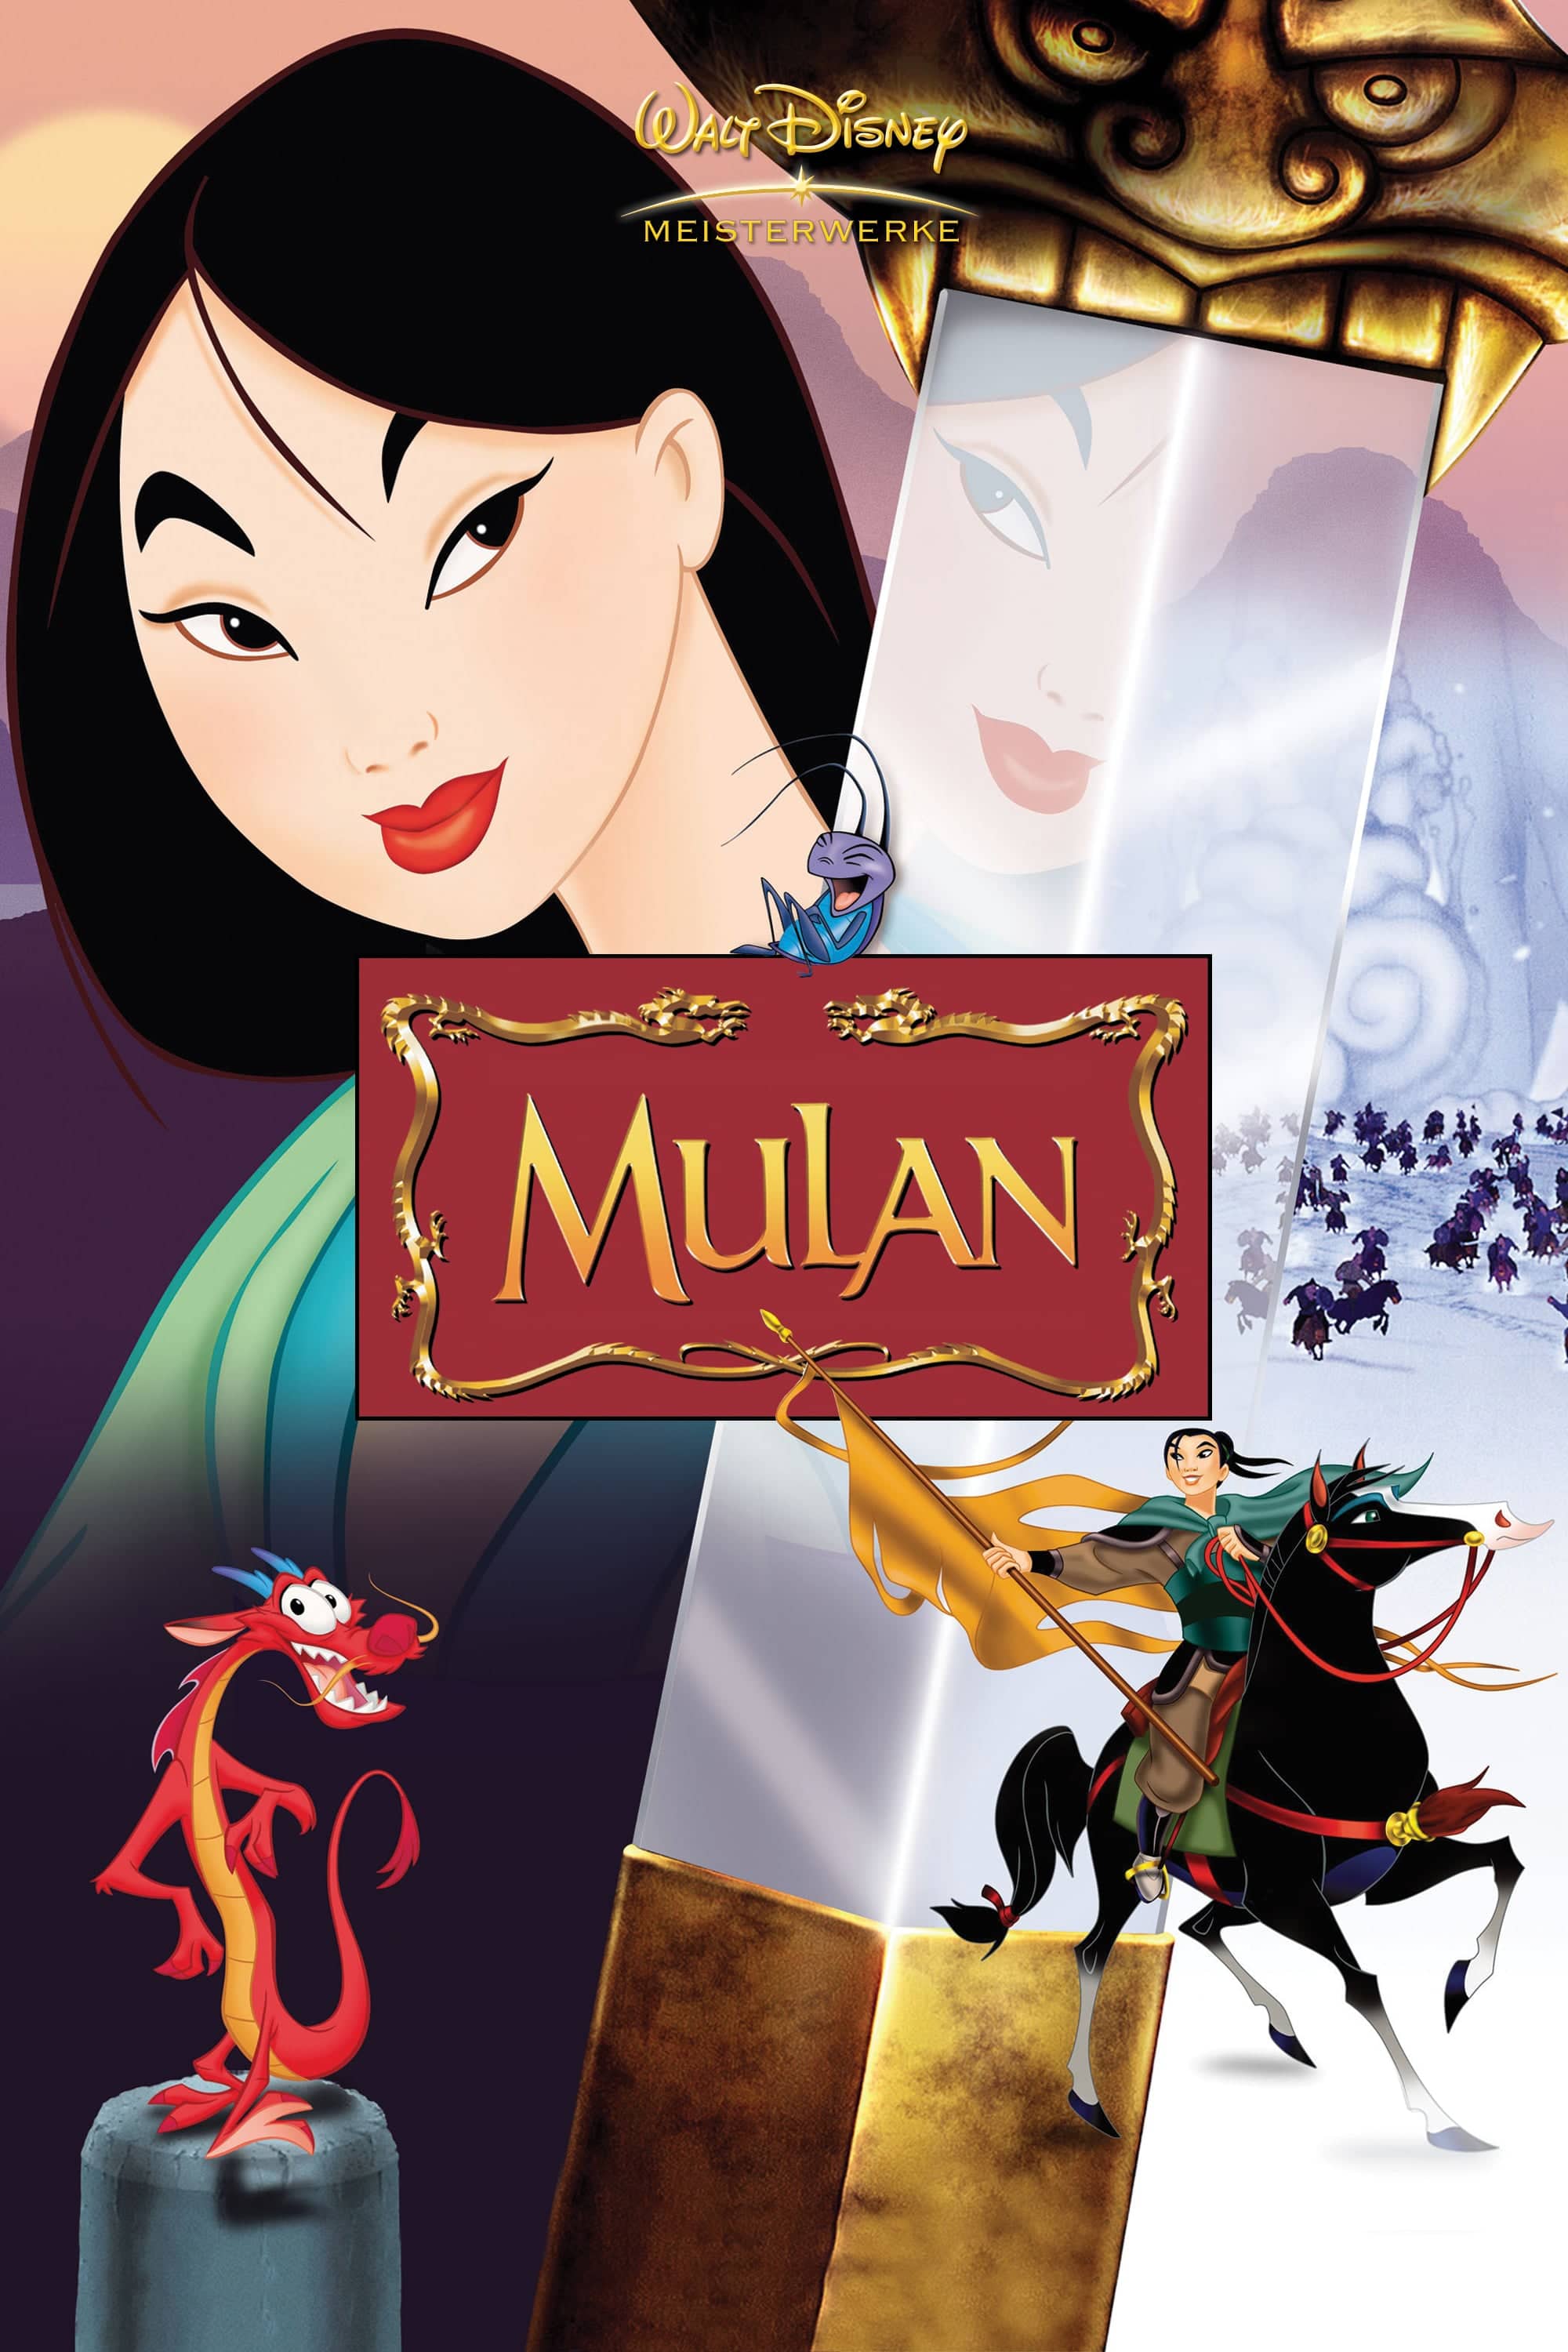 Plakat von "Mulan"